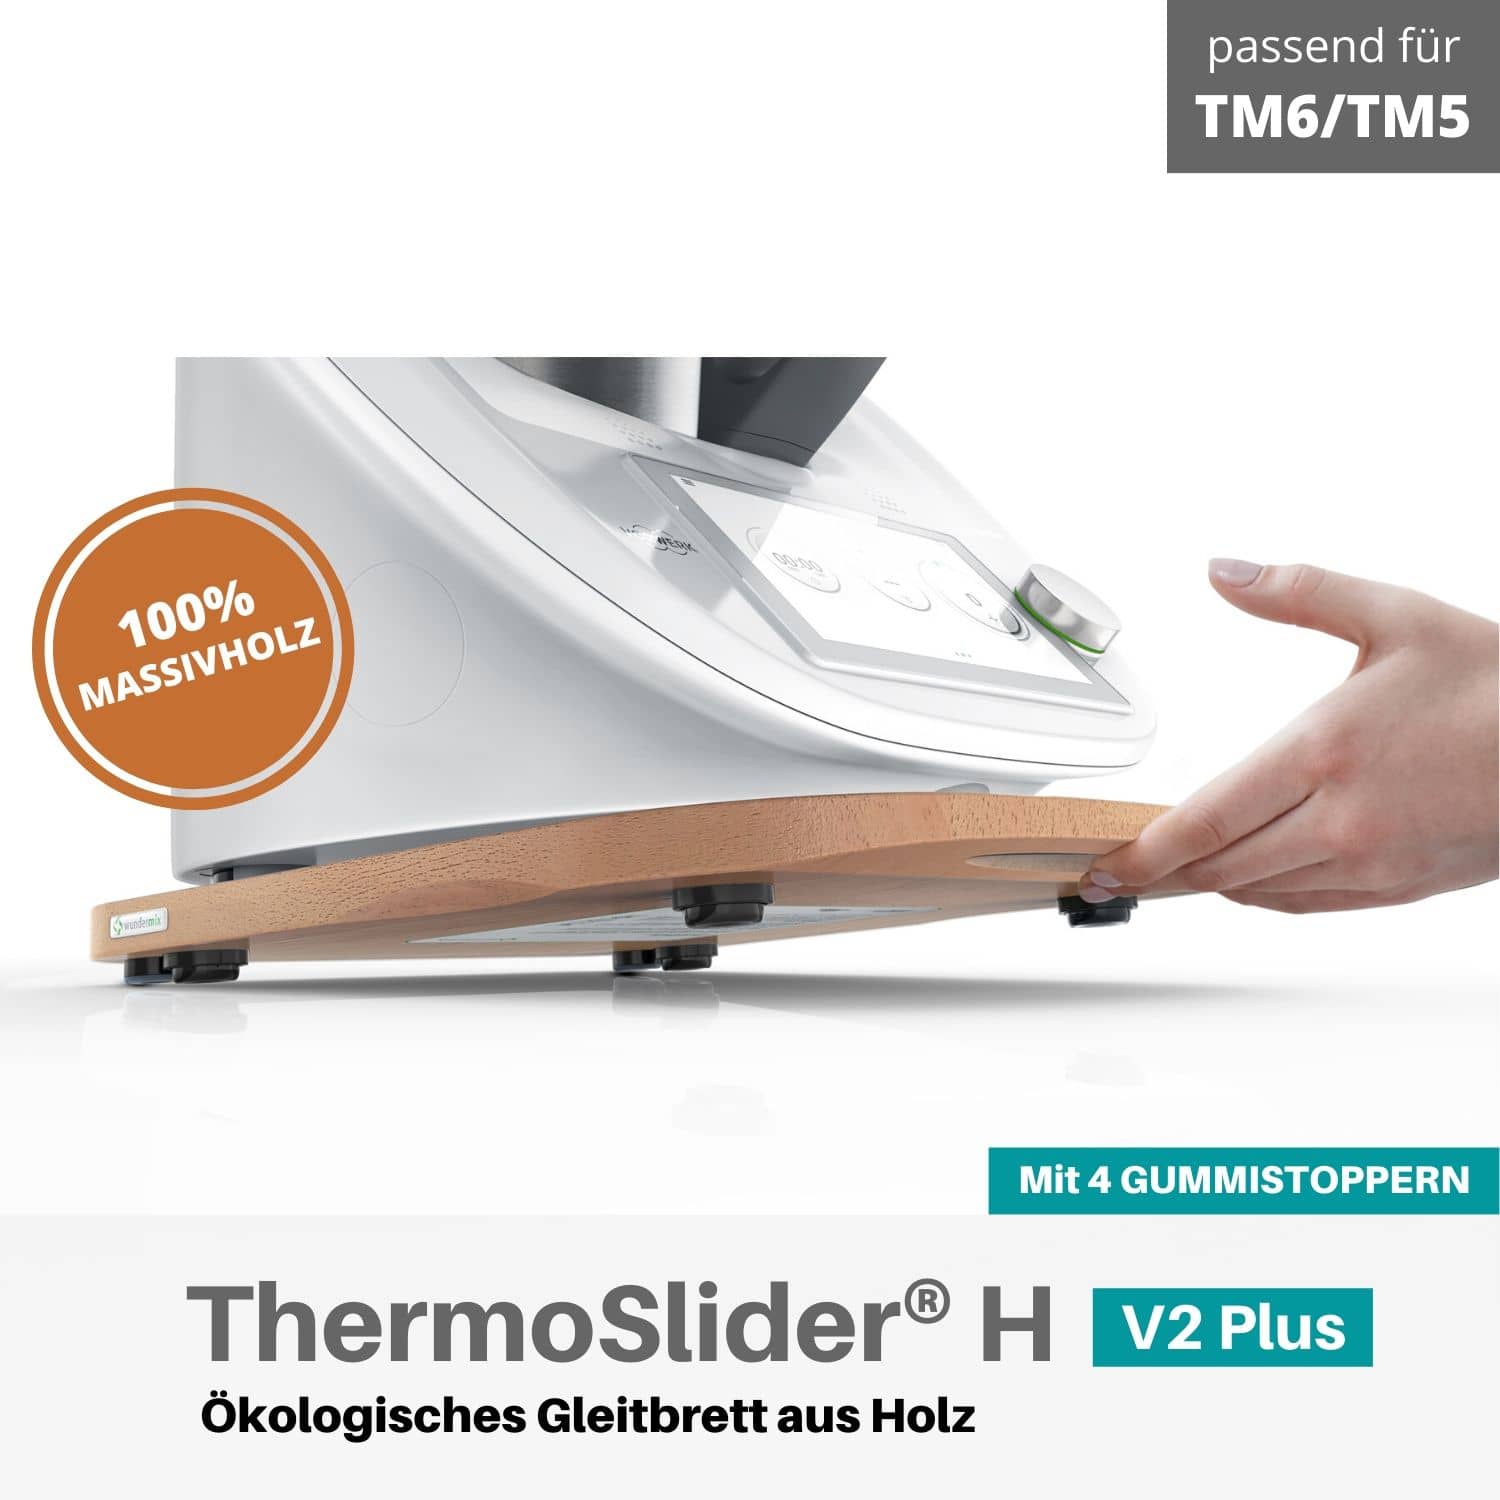 Thermoslider® H V2 Plus Buche Gleitbrett für den Thermomix TM6, TM5